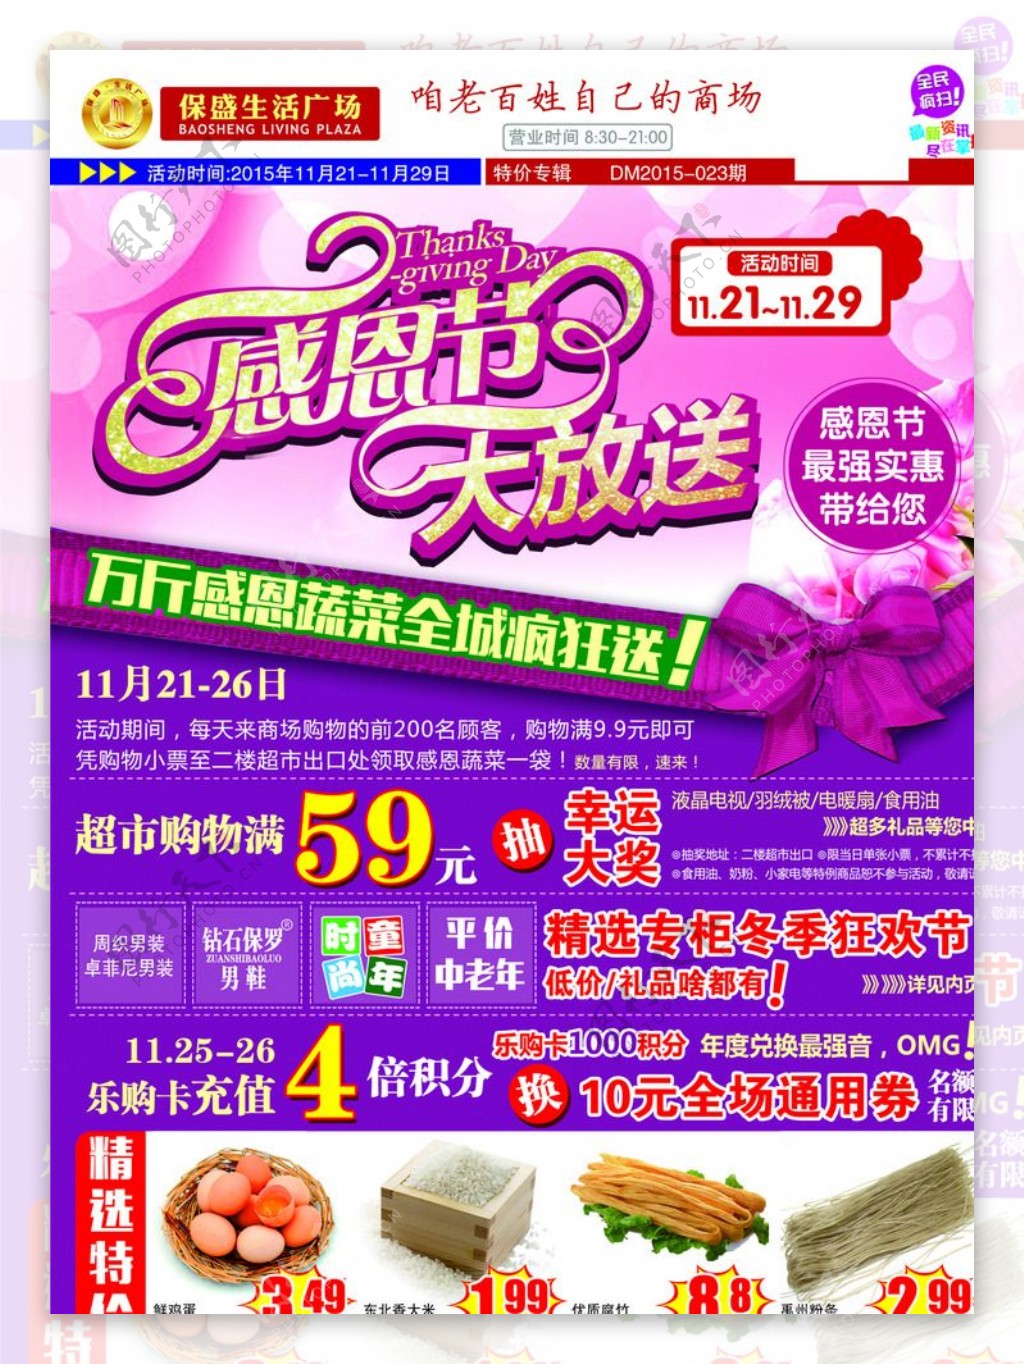 商场感恩节促销DM彩页海报